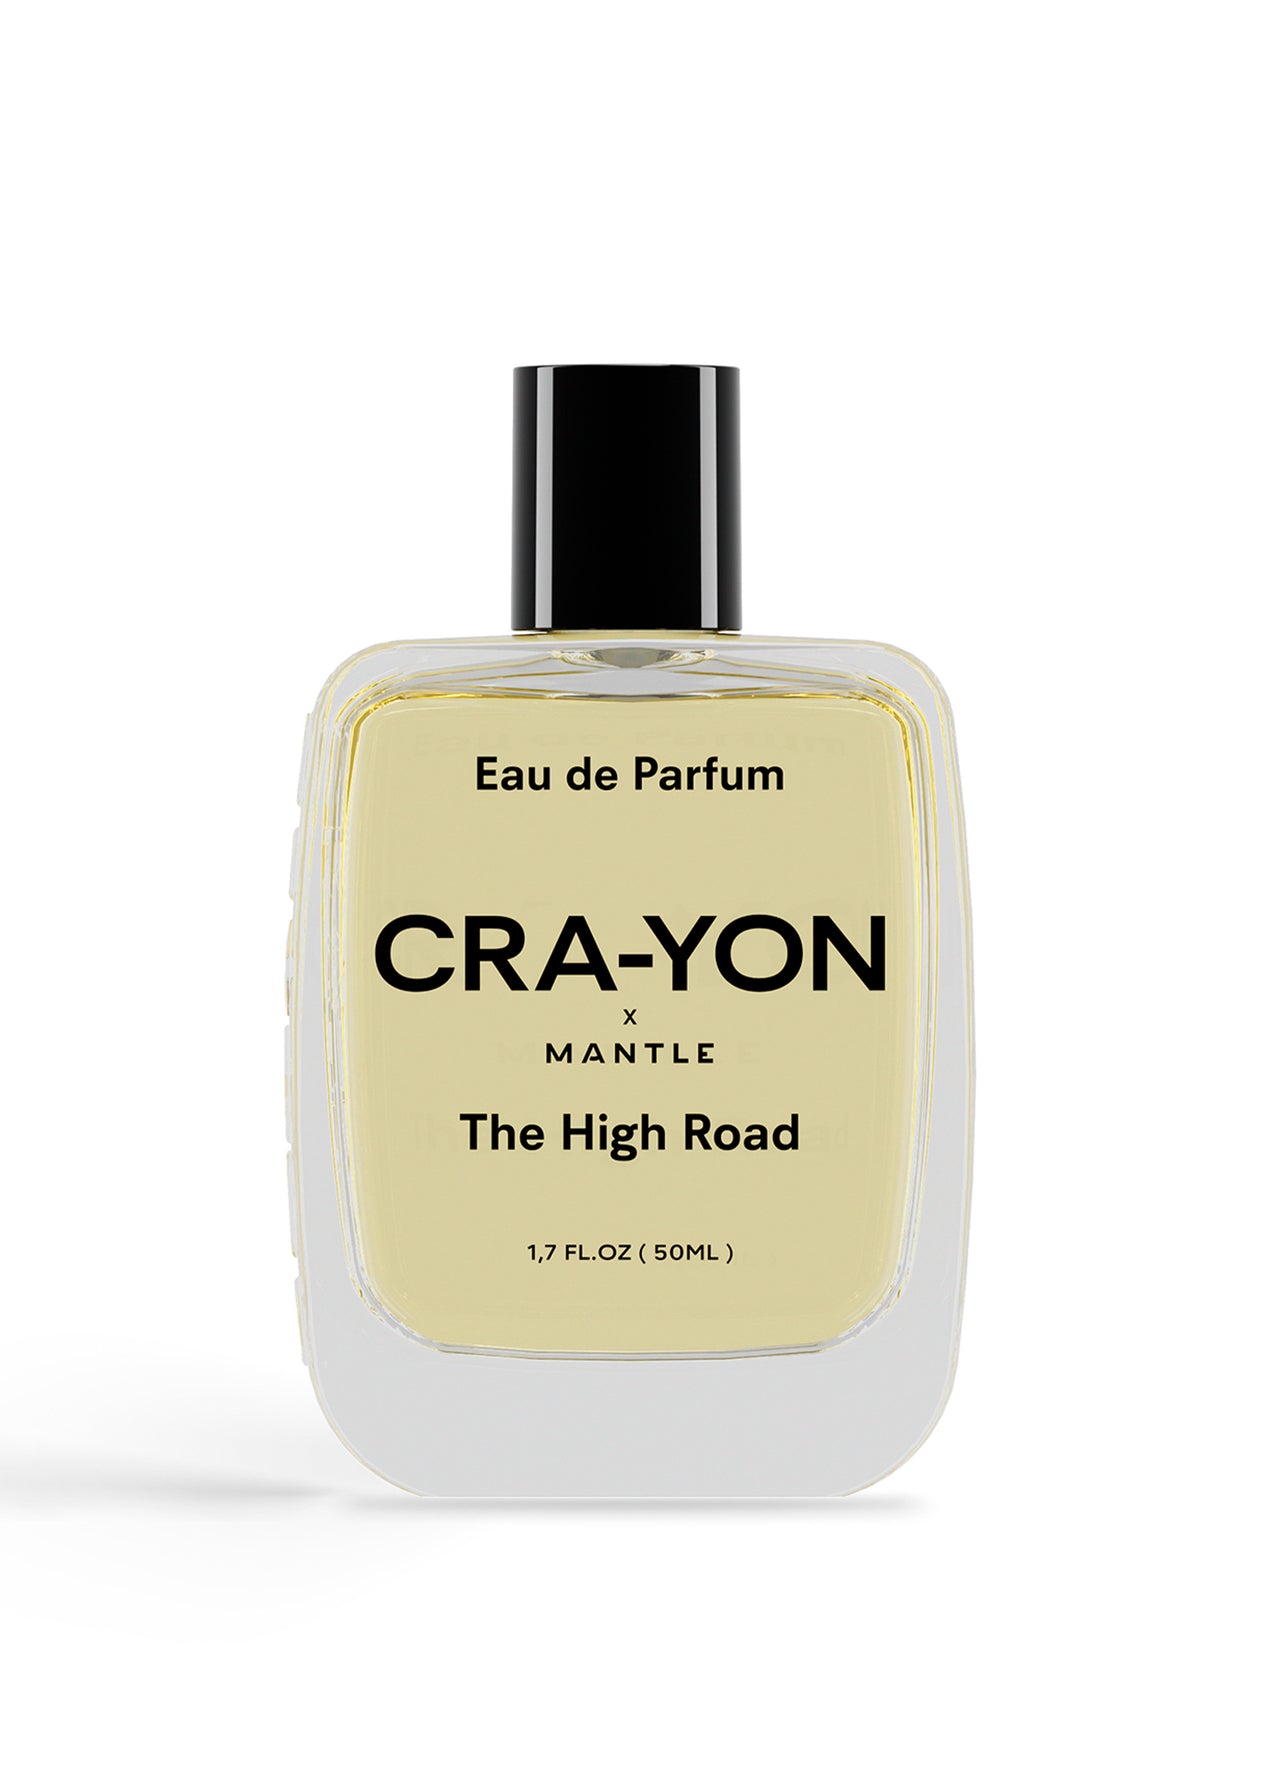 CRA-YON The High Road Eau de Parfum